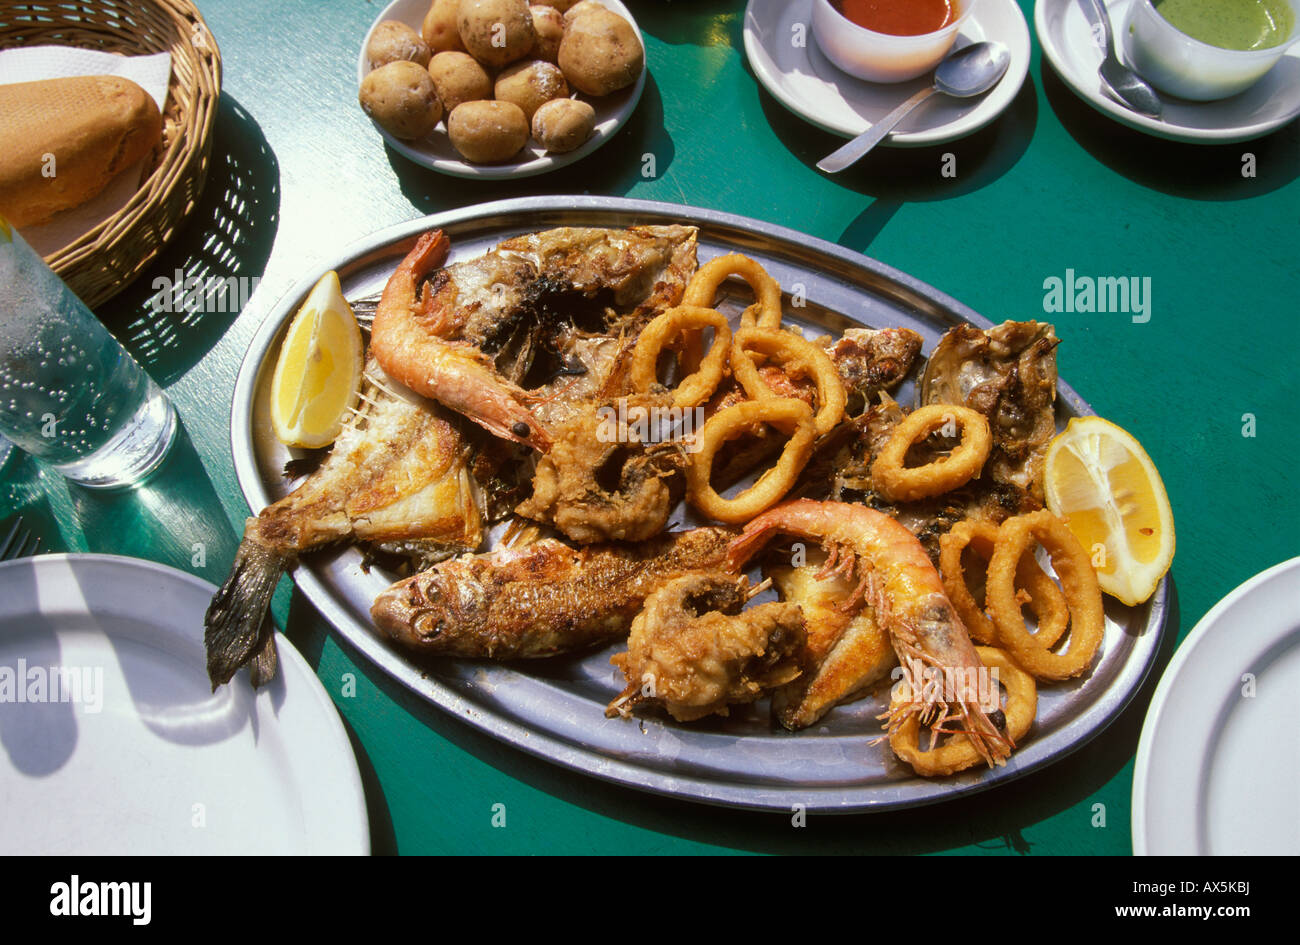 Parillada de Pescado, grilled fish platter, El Golfo, Lanzarote, Canary Islands, Atlantic Ocean, Spain, Europe Stock Photo